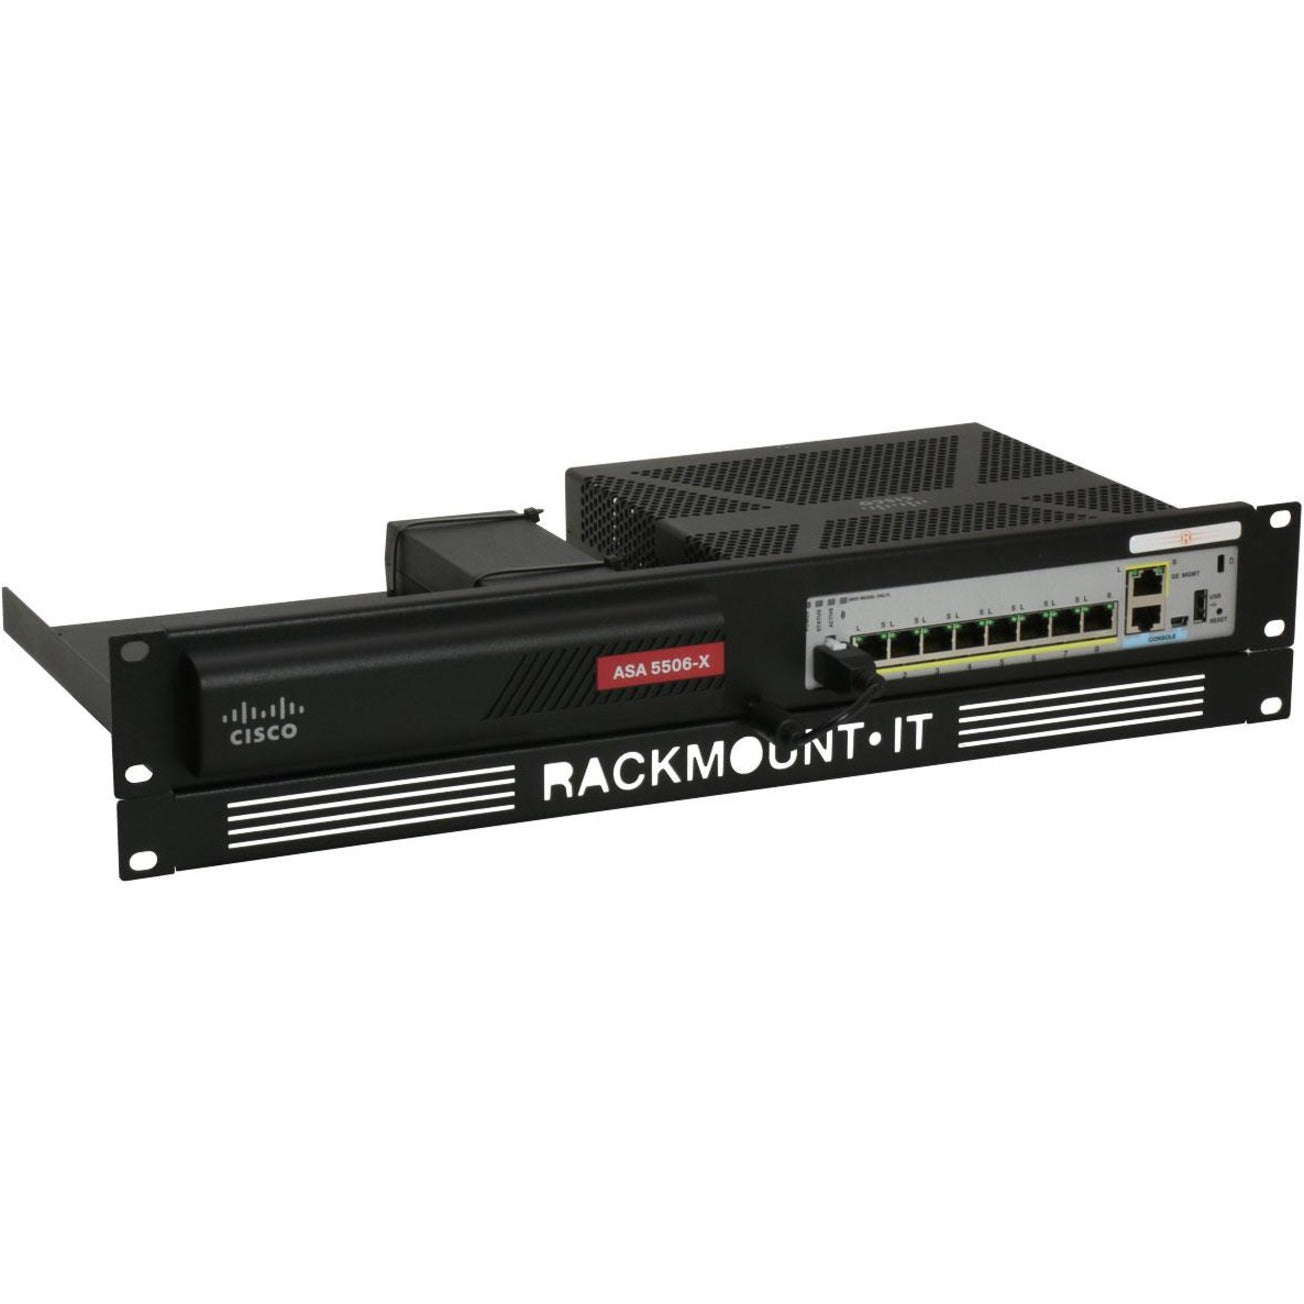 RACKMOUNT.IT RM-CI-T8 Cisrack 랙 마운트 Cisco ASA 5506-X 및 Firepower 1010과 호환 가능.